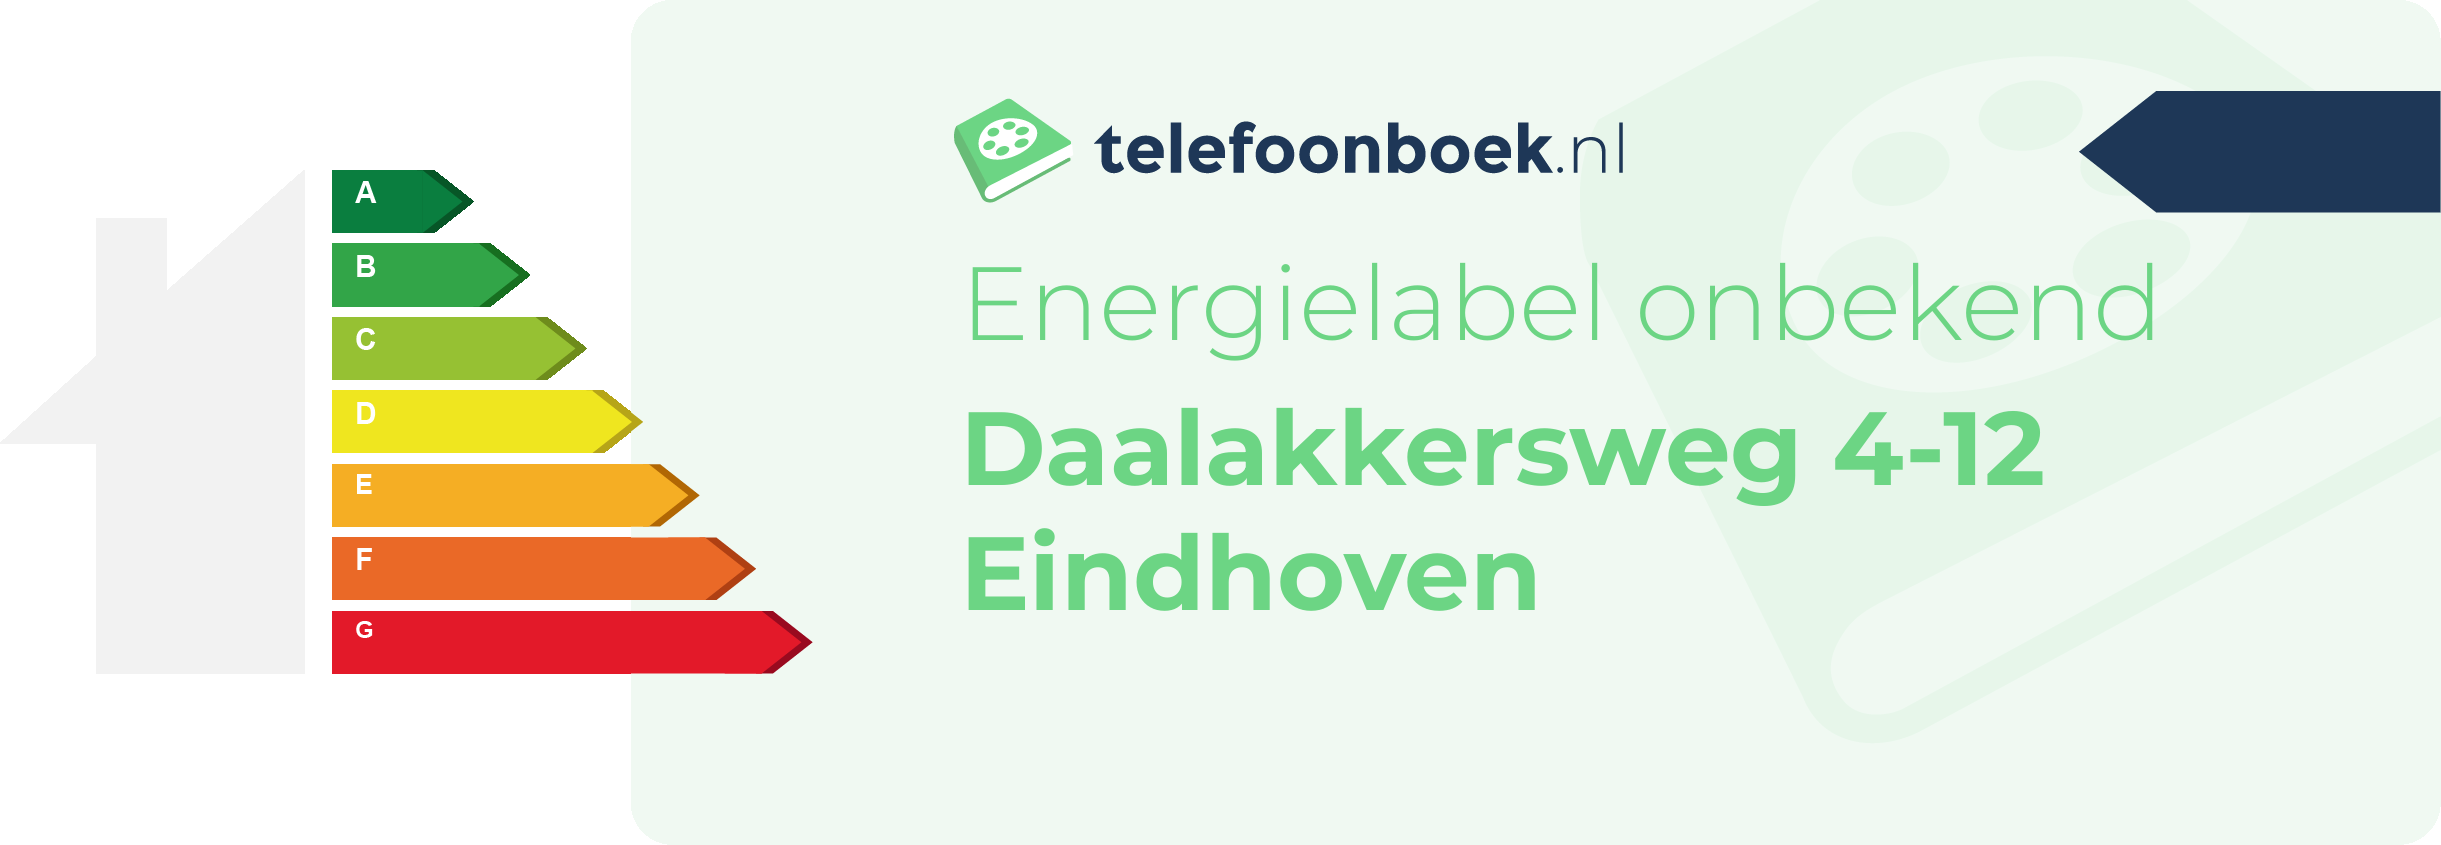 Energielabel Daalakkersweg 4-12 Eindhoven